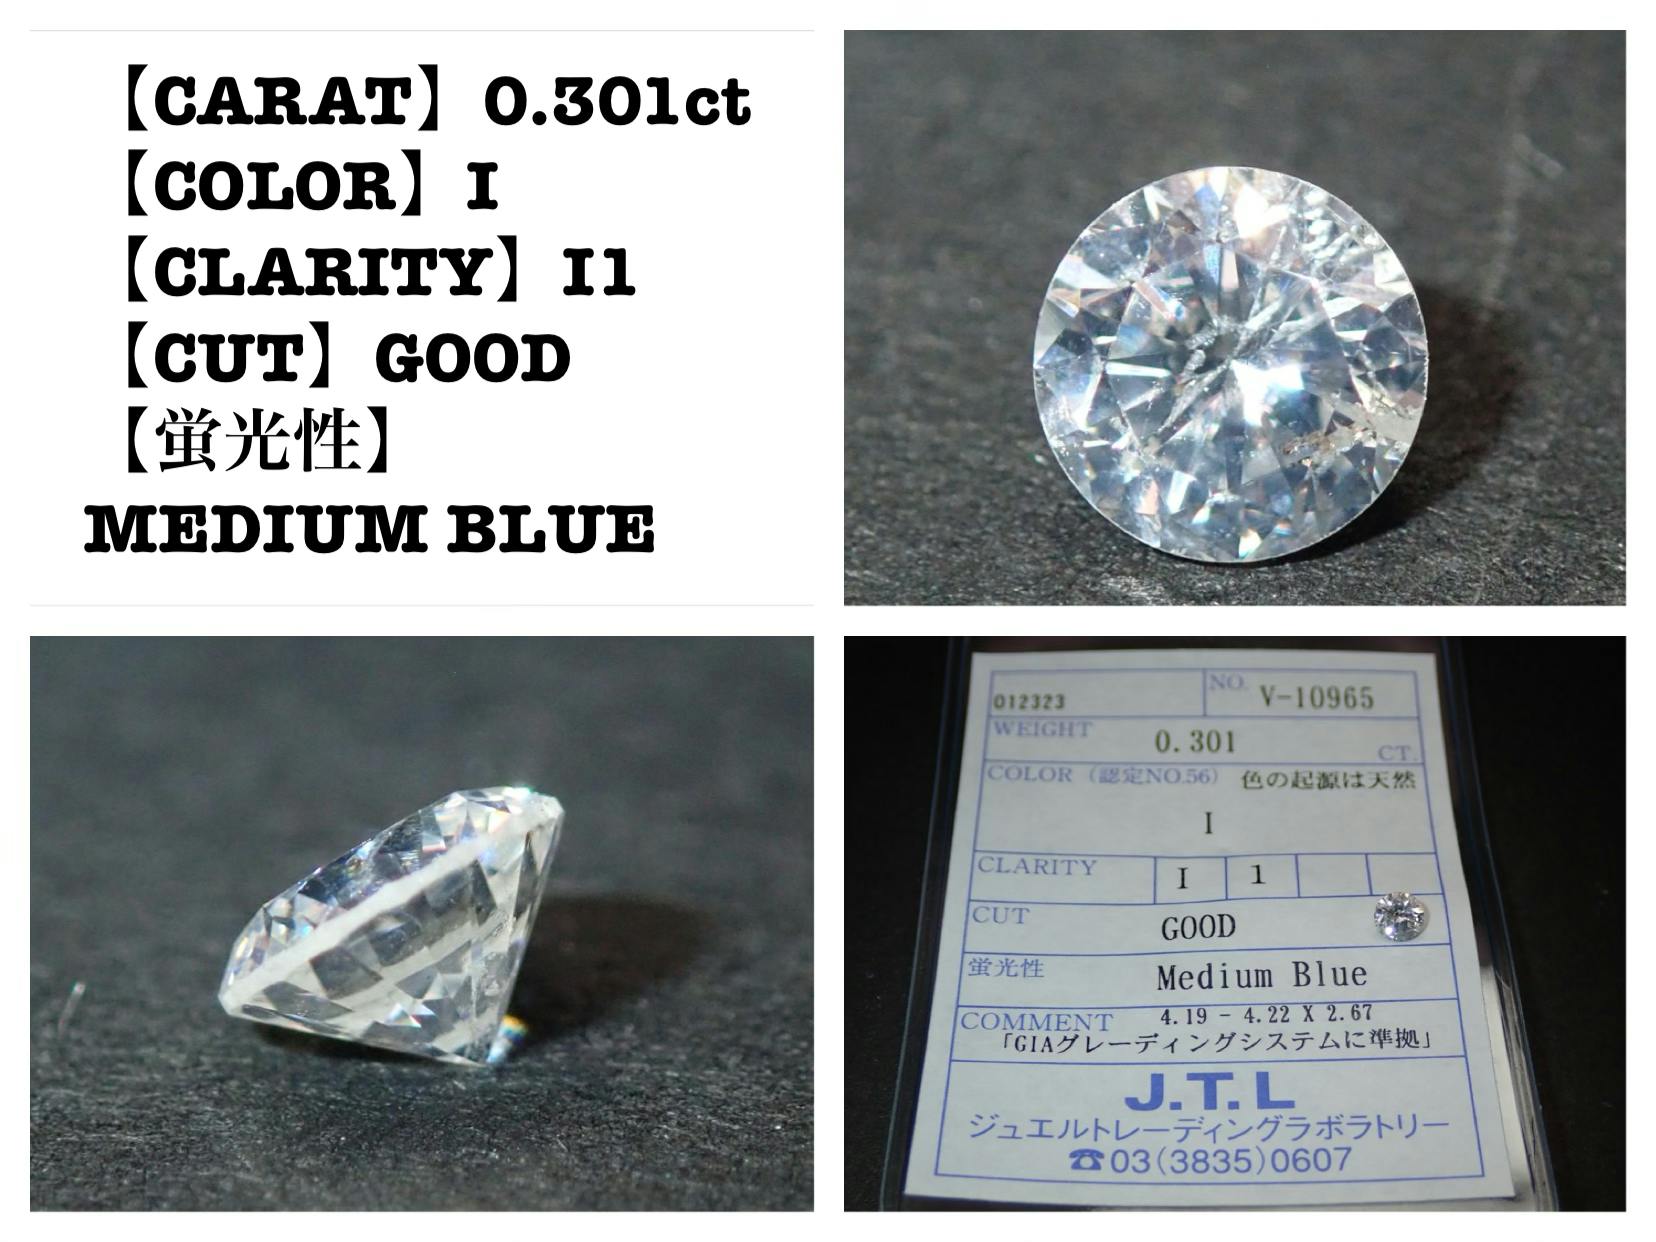 本物の輝きを届けたい〜資産価値のある天然ダイヤモンドを貴方の手に〜